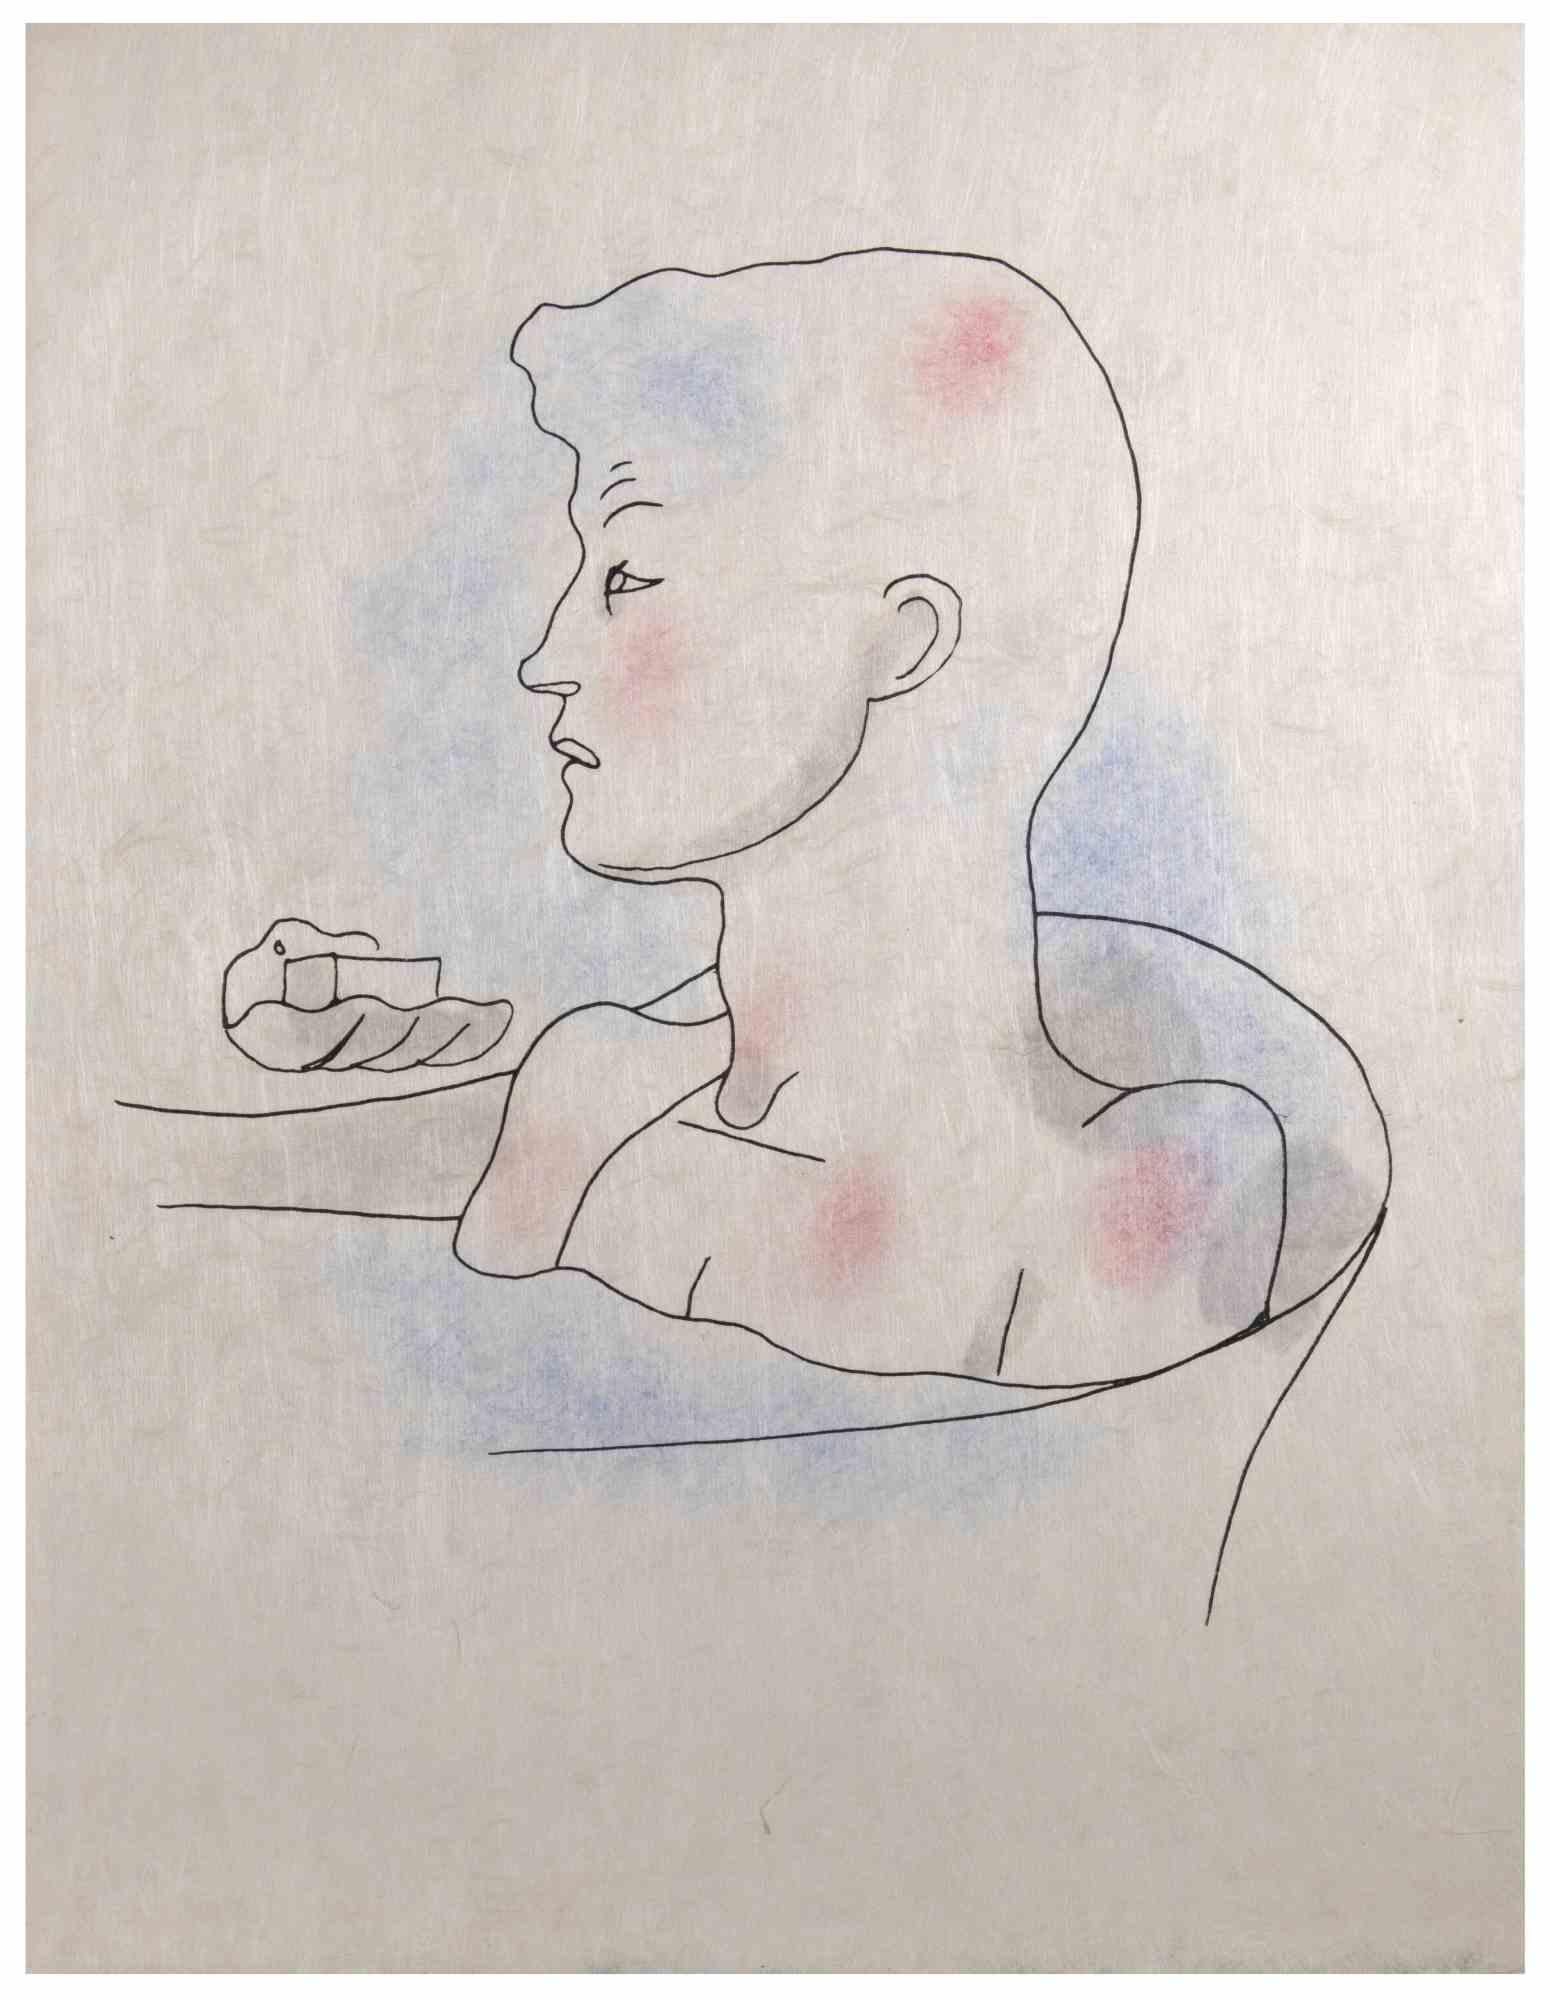 To The Bathroom est une lithographie colorée réalisée sur papier japonais par  Jean Cocteau (1889 -1963) en 1930 ca. 

Dessinateur, poète, essayiste, dramaturge, librettiste, réalisateur français.

Excellent état, sans signature.

L'œuvre représente